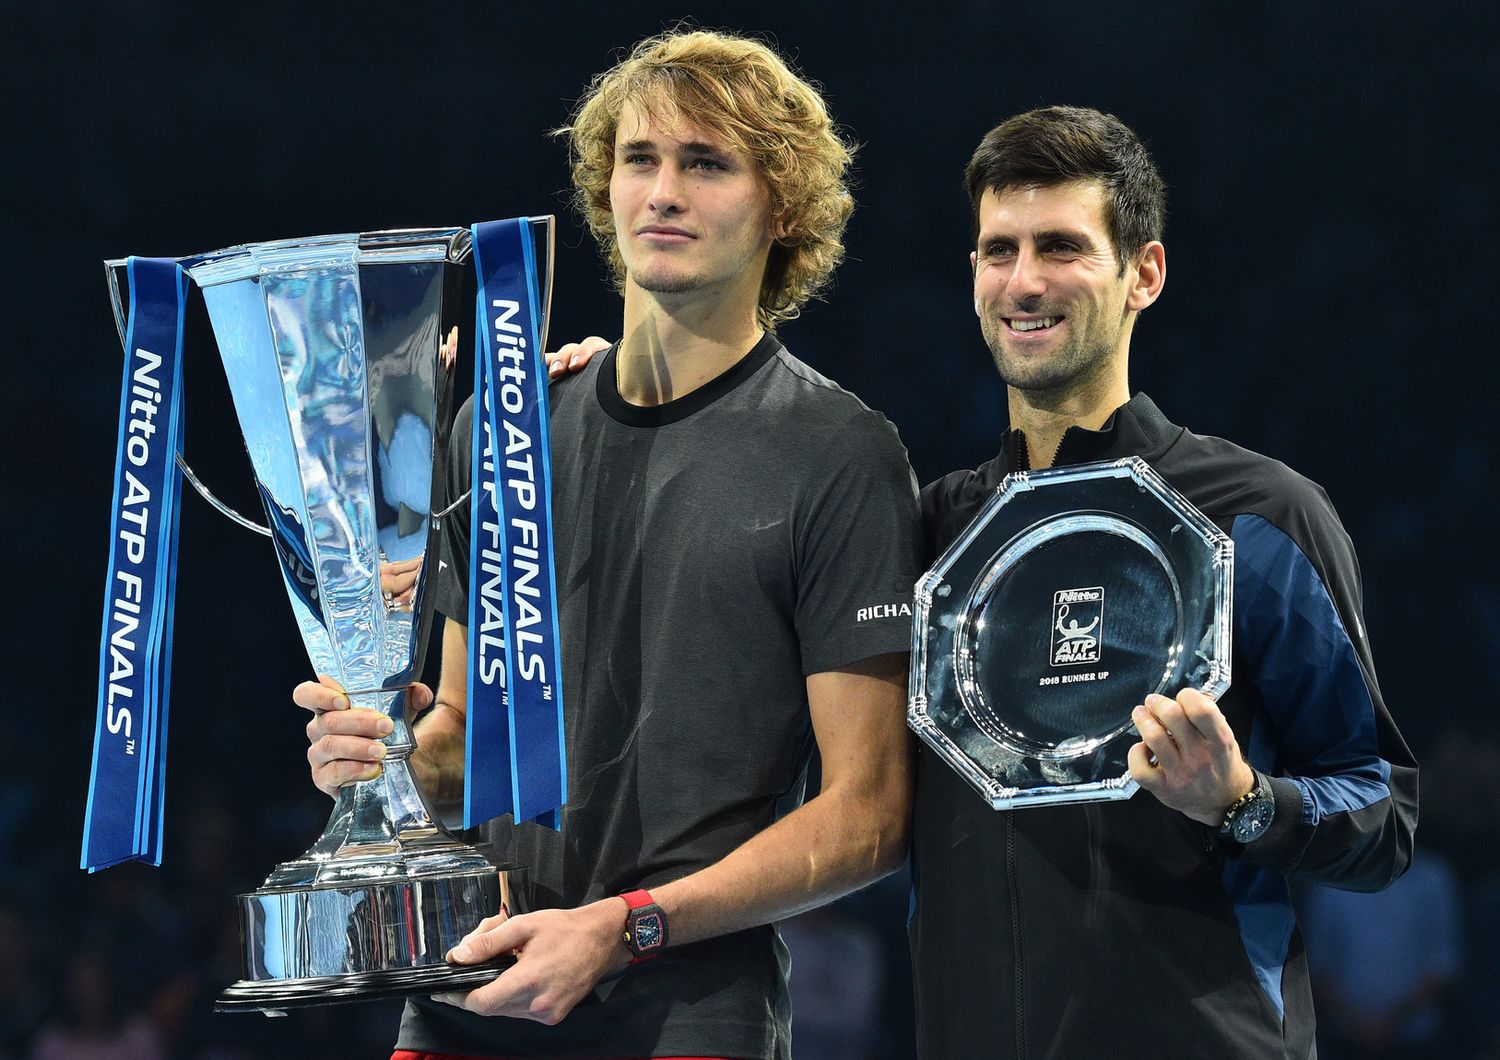 Sasha Zverev e Novak Djokovic, vincitore e finalista delle ultime Atp Finals di Londra 2018